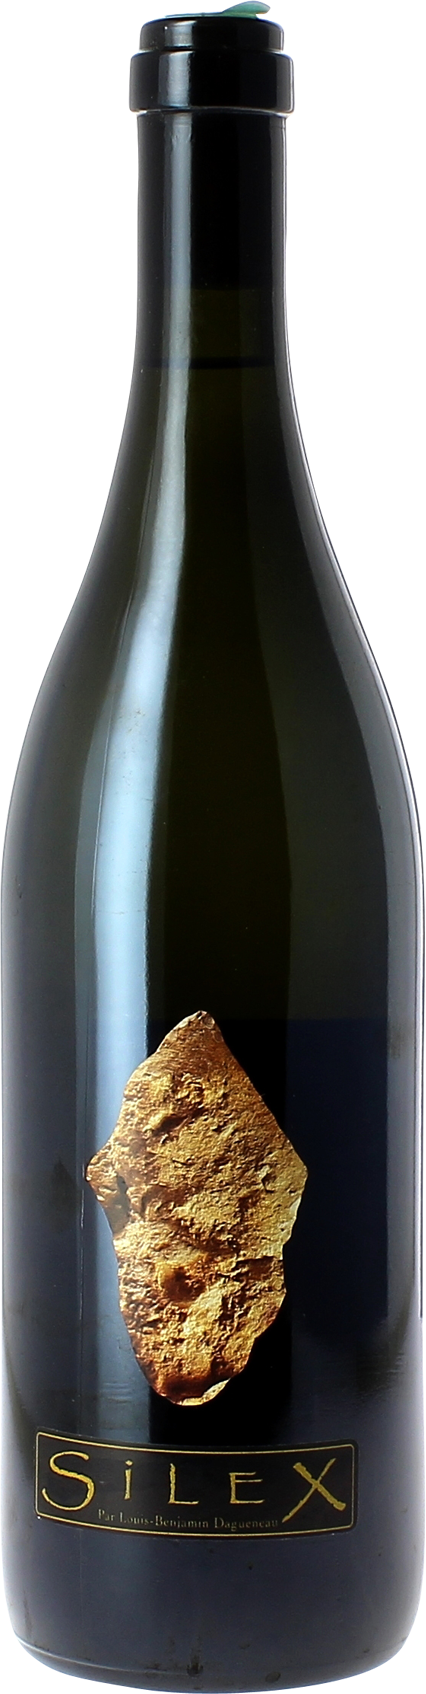 Pouilly fume silex didier dagueneau 1998  Vin de France, Valle de la Loire